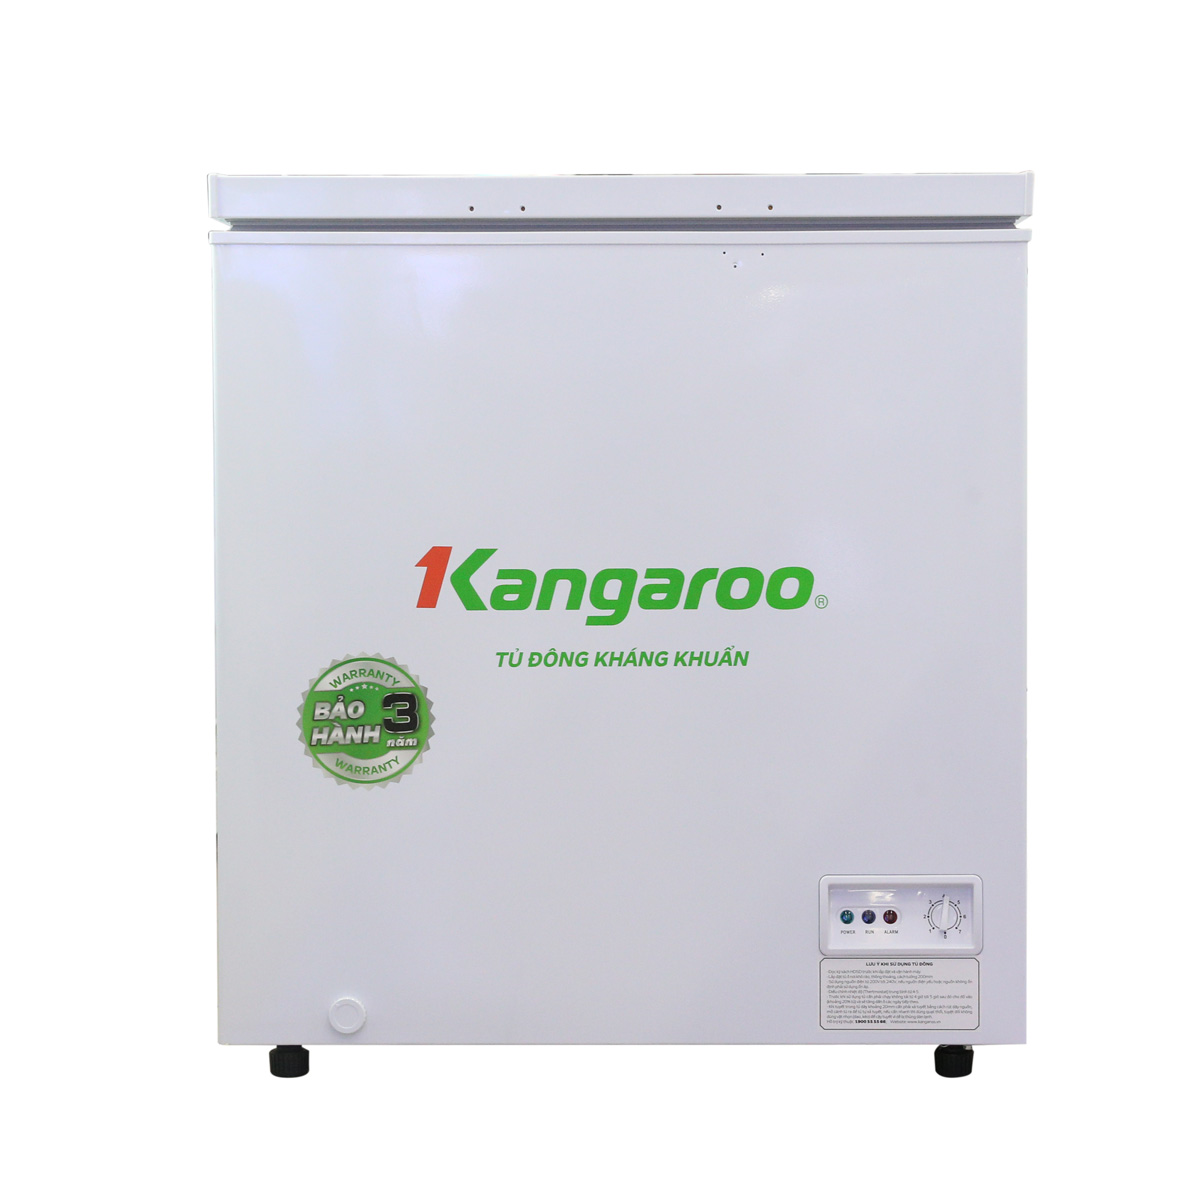 Tủ đông kháng khuẩn Kangaroo KG235C1